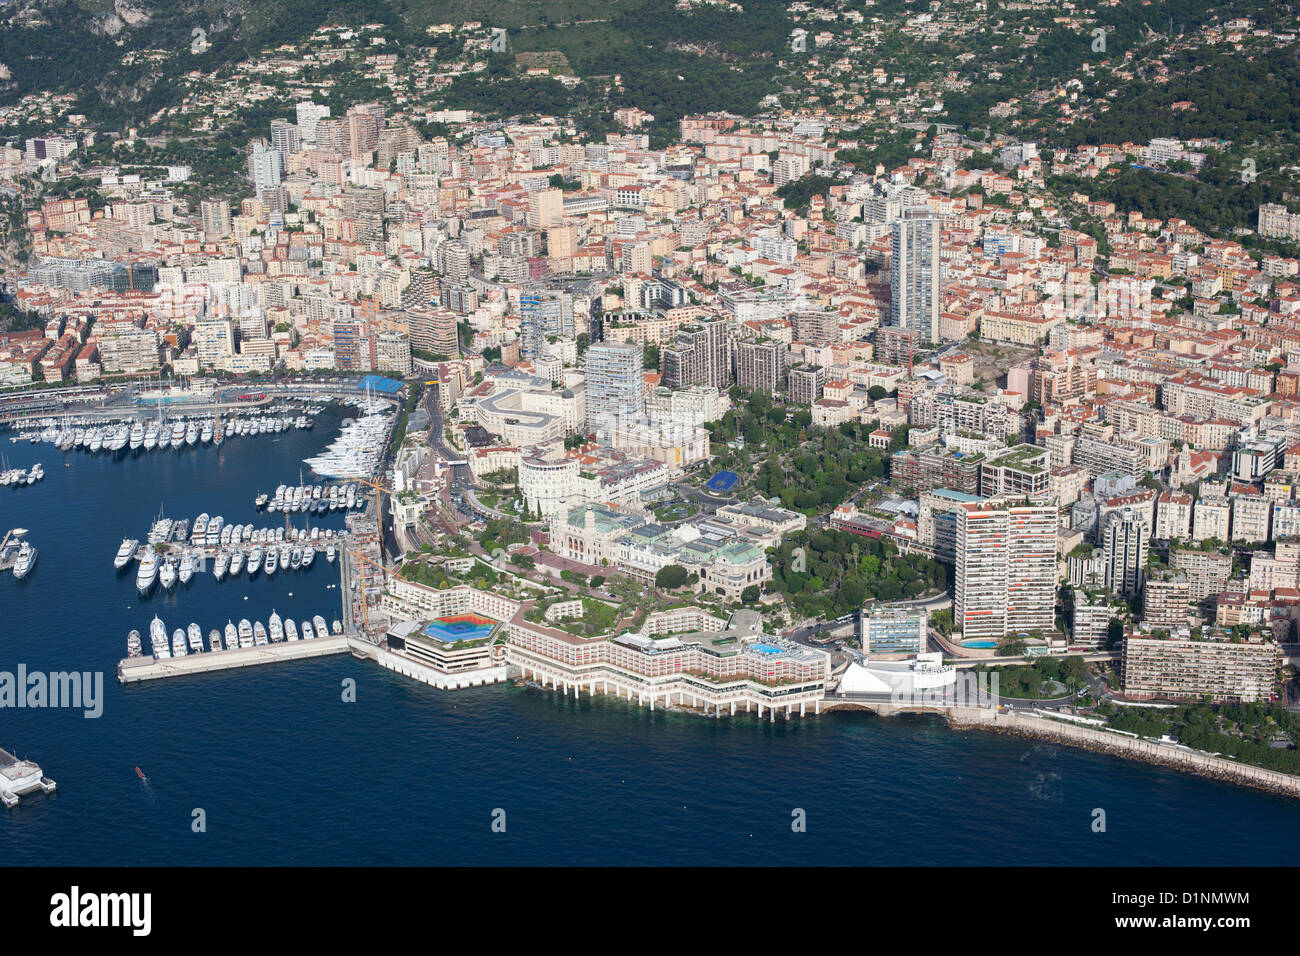 LUFTAUFNAHME. Das Fairmont Hotel (voriges Loews Hotel) liegt direkt am Meer und das Casino über dem Hotel. Bezirk Monte-Carlo, Fürstentum Monaco. Stockfoto